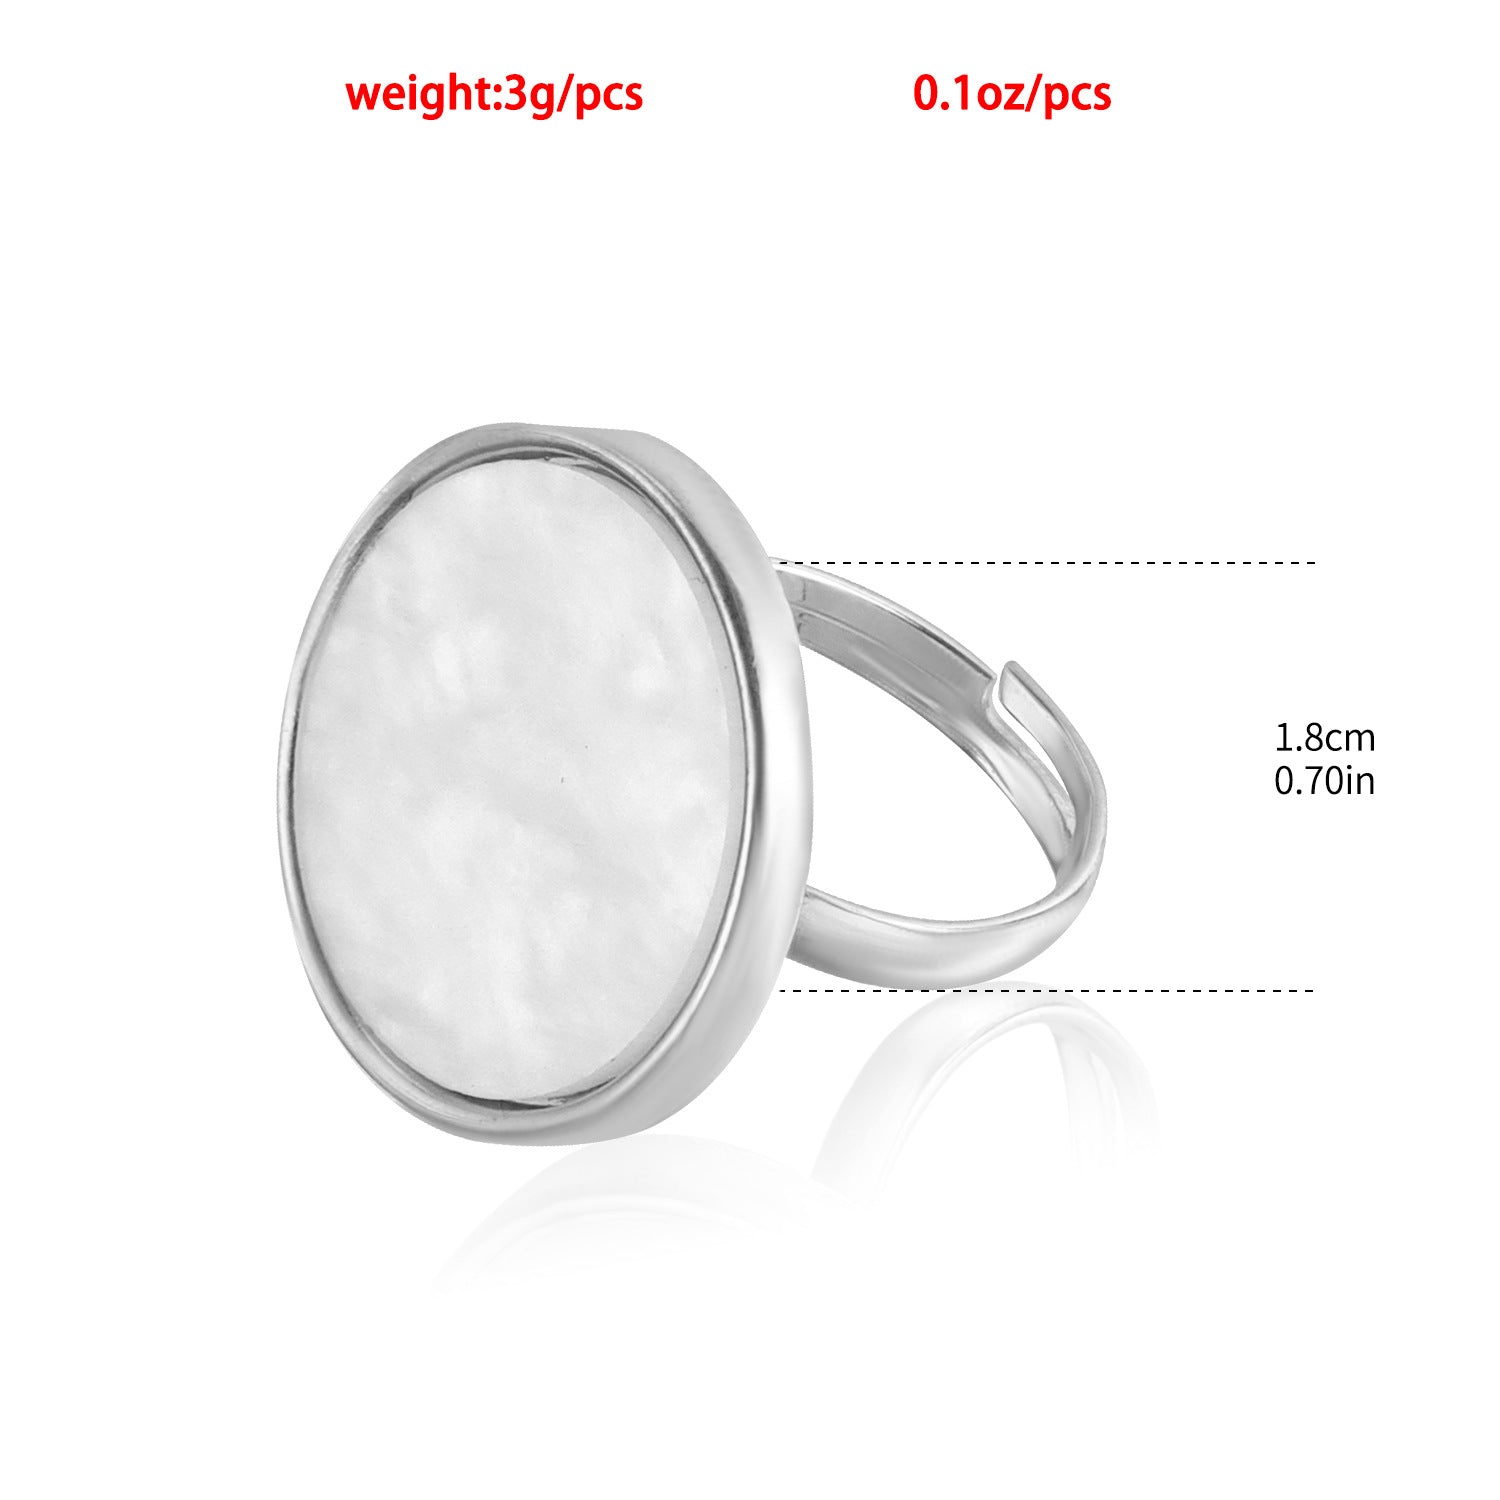 Special Interest Light Luxury White Shell Ring Advanced Sense